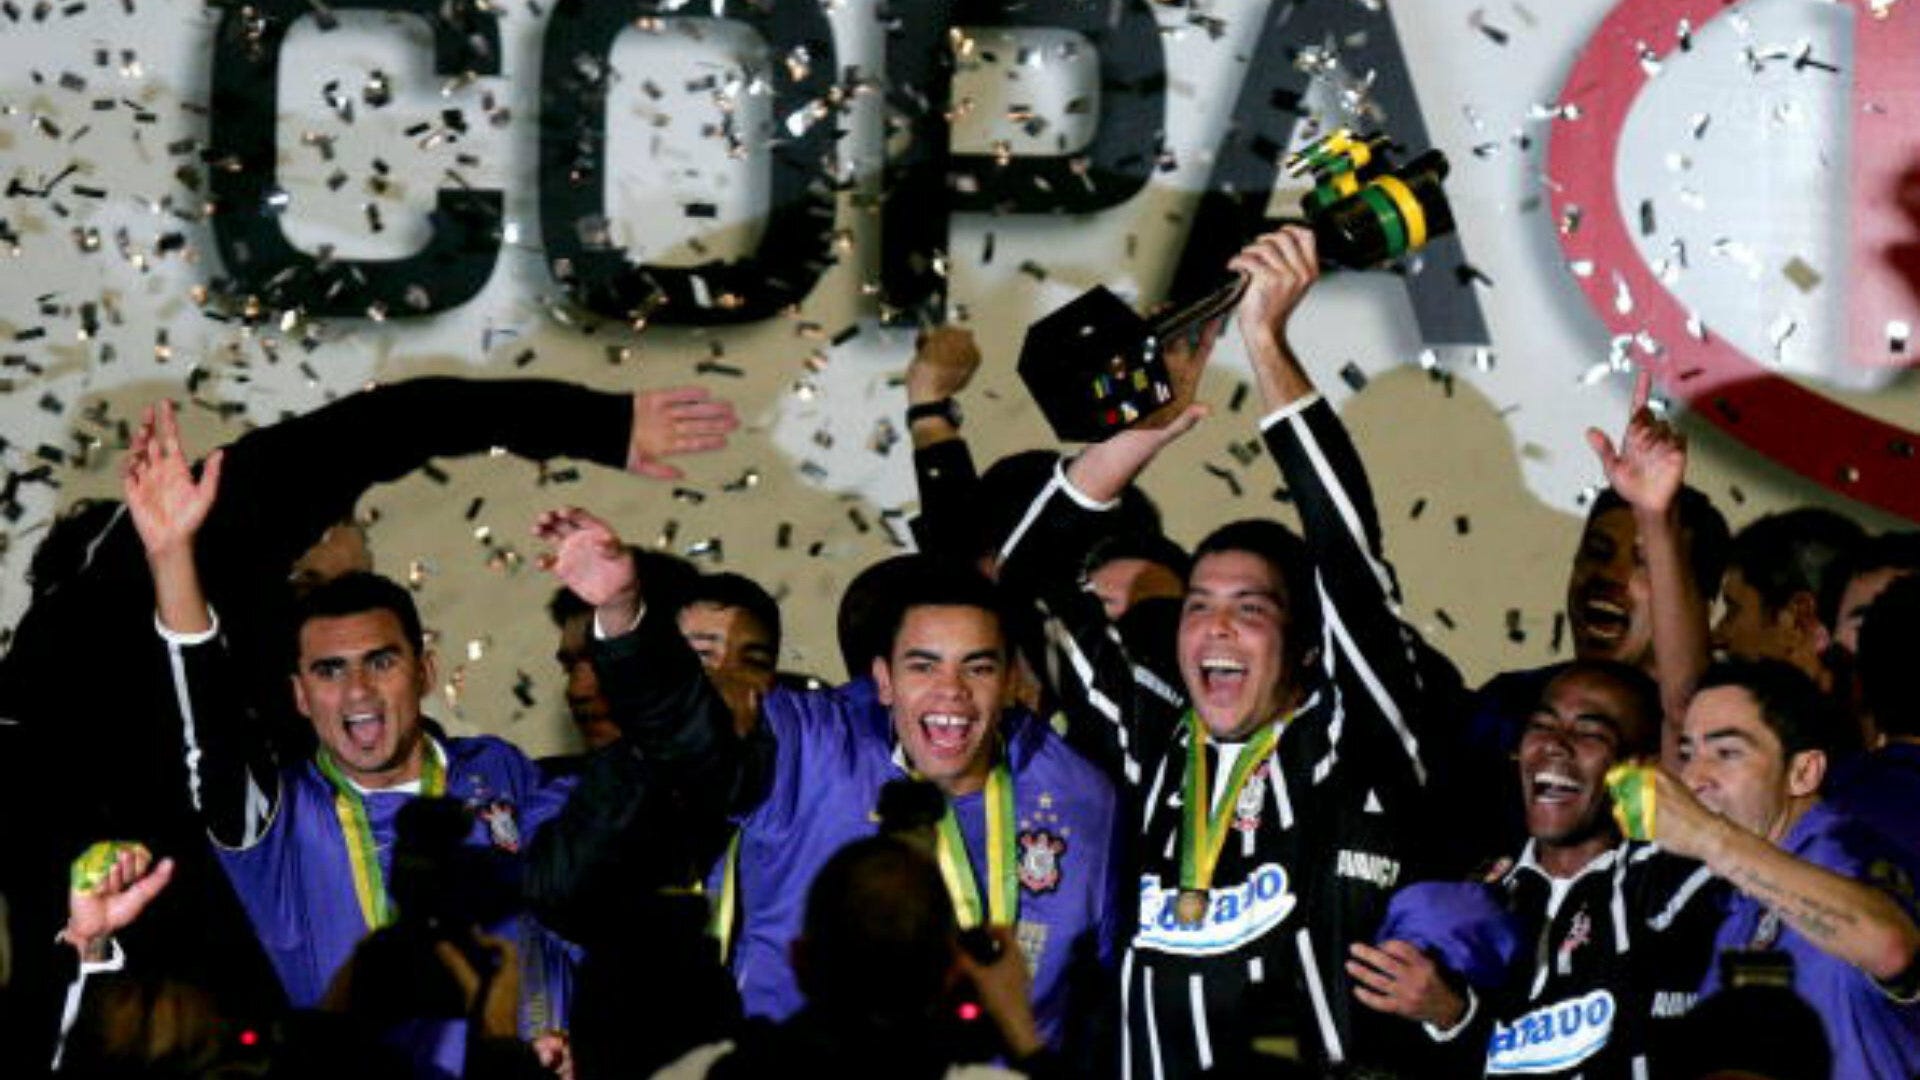 Qual foi a última vez que o Corinthians ganhou a Copa do Brasil?